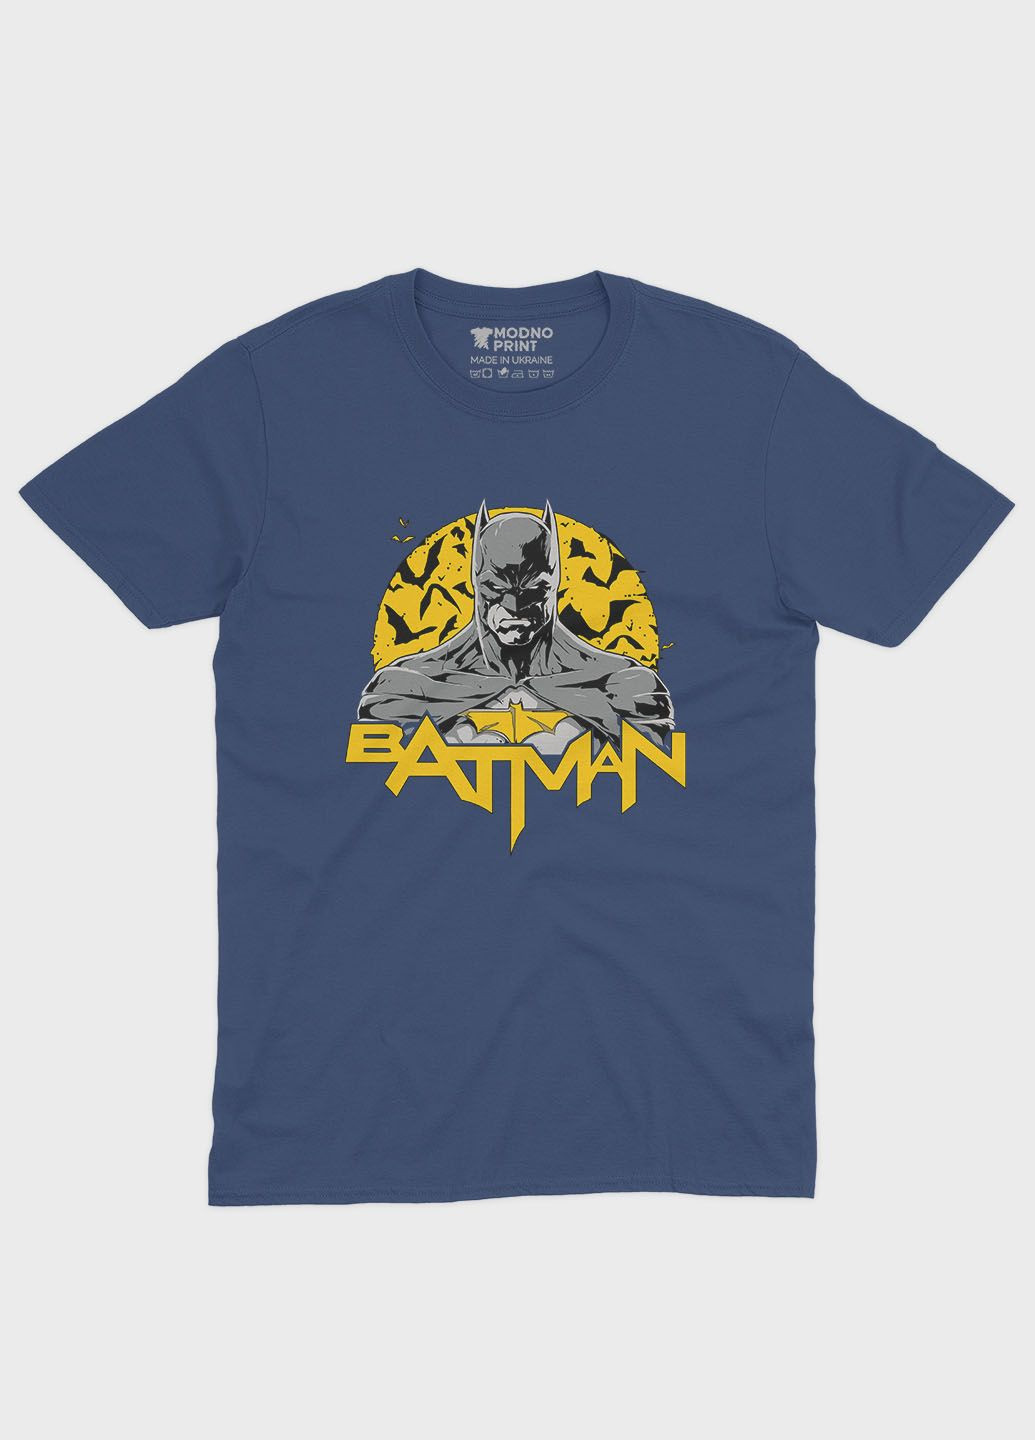 Темно-синяя демисезонная футболка для мальчика с принтом супергероя - бэтмен (ts001-1-nav-006-003-011-b) Modno